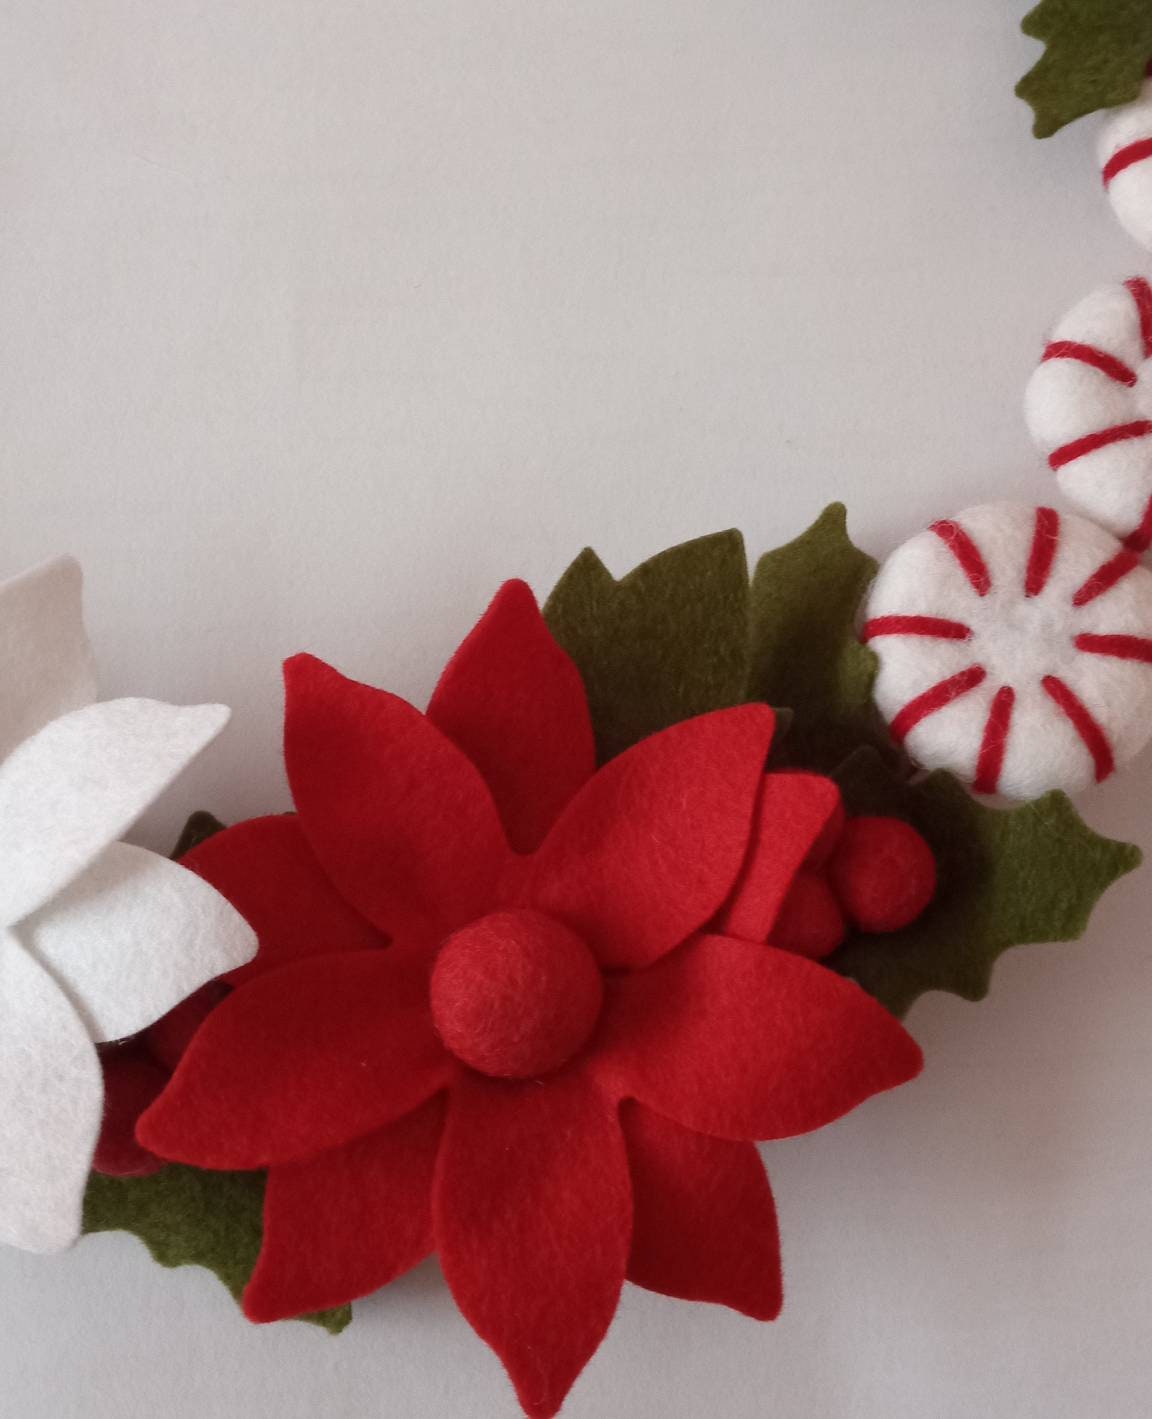 Wool Felt Flowers - Victorian Christmas Flowers - 19 Flowers & 24 leaves -  DIY Christmas Wreaths, Garlands, Headbands